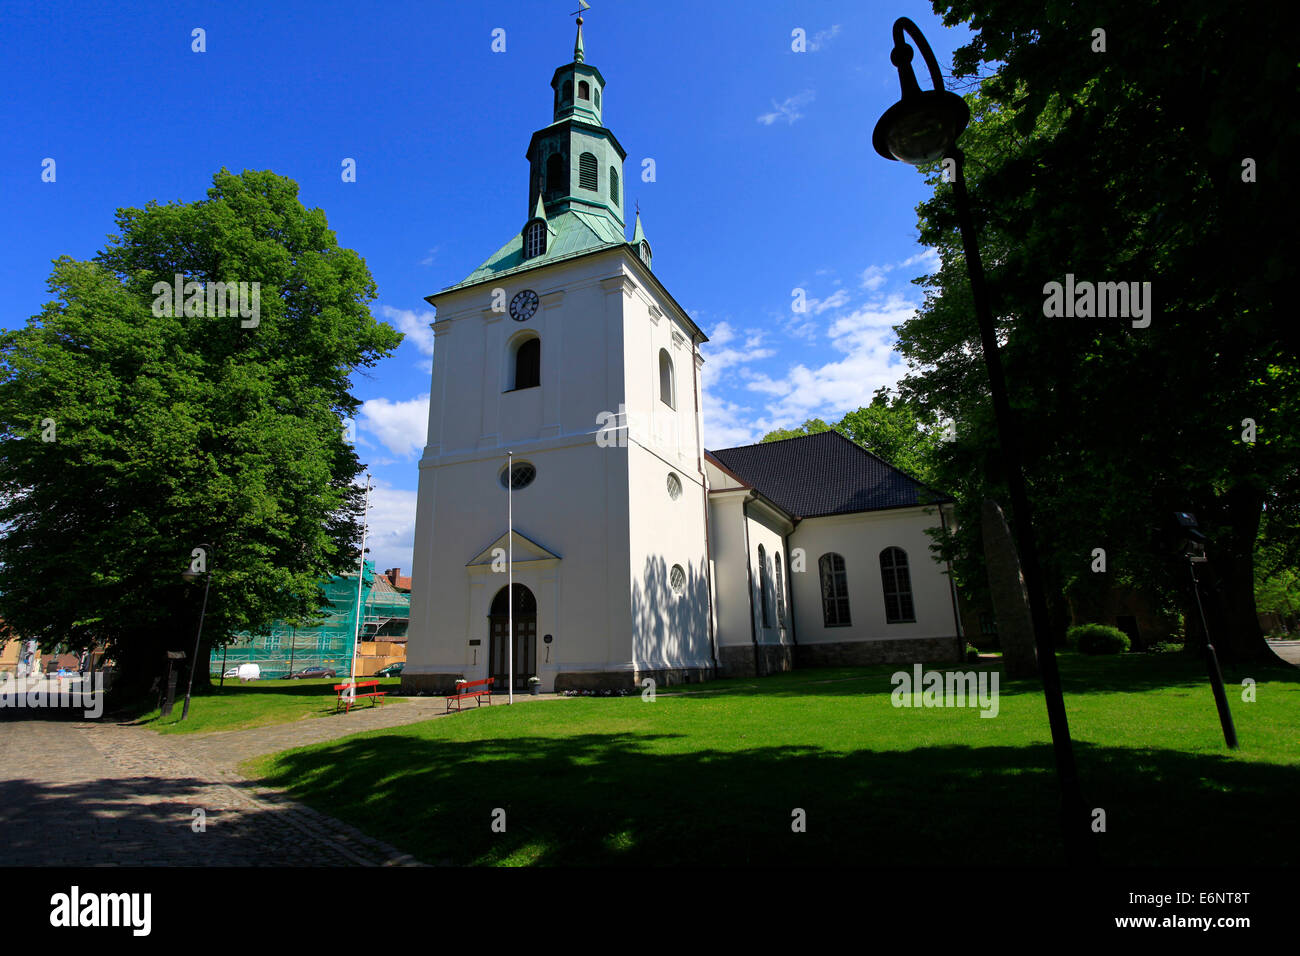 Die Kirche in Gamlebyen wurde nach einem Brand im Jahre 1779 umgewidmet, 1764 die Kirche zerstört. Eine Glocke stammt aus dem Jahr 1300 und die andere aus dem Jahr 1515. Foto: Klaus Nowottnick Datum: 2. Juni 2014 Stockfoto